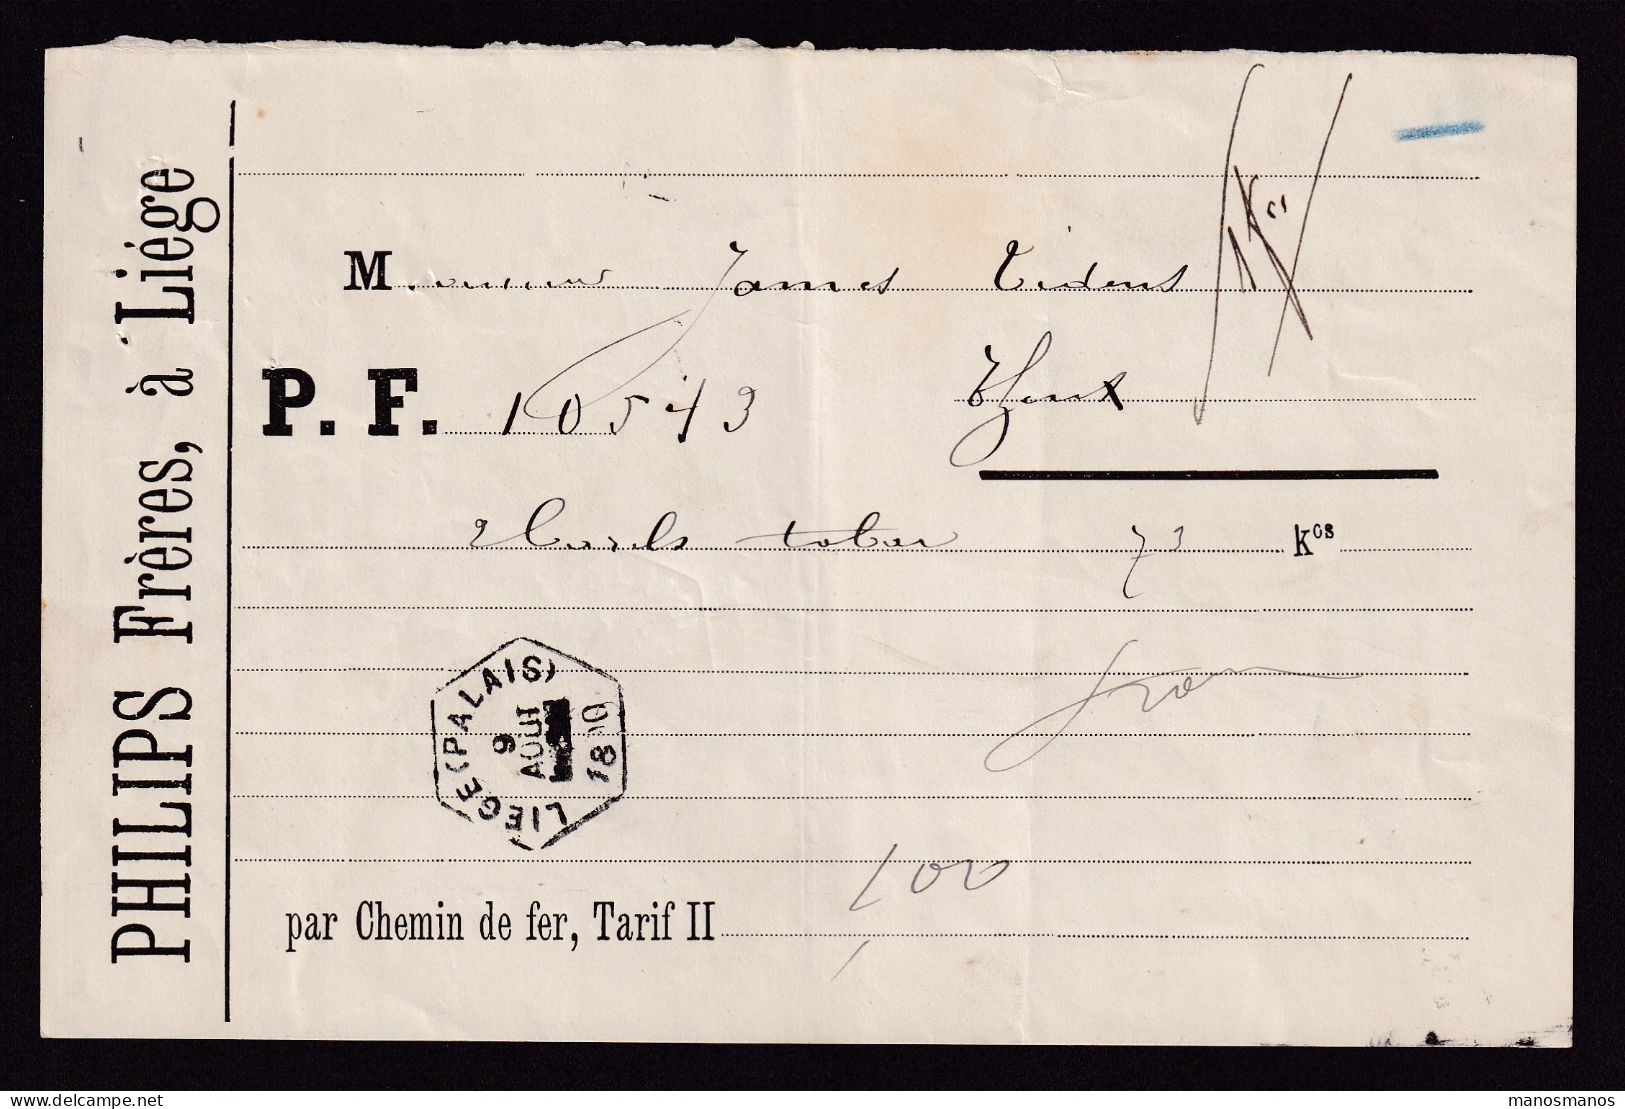 DDFF 820 -- BELGIUM - Lettre De Voiture Hexagonal Gare De LIEGE PALAIS 1890 à THEUX / Entete Philips Frères (TABAC) - Tabak